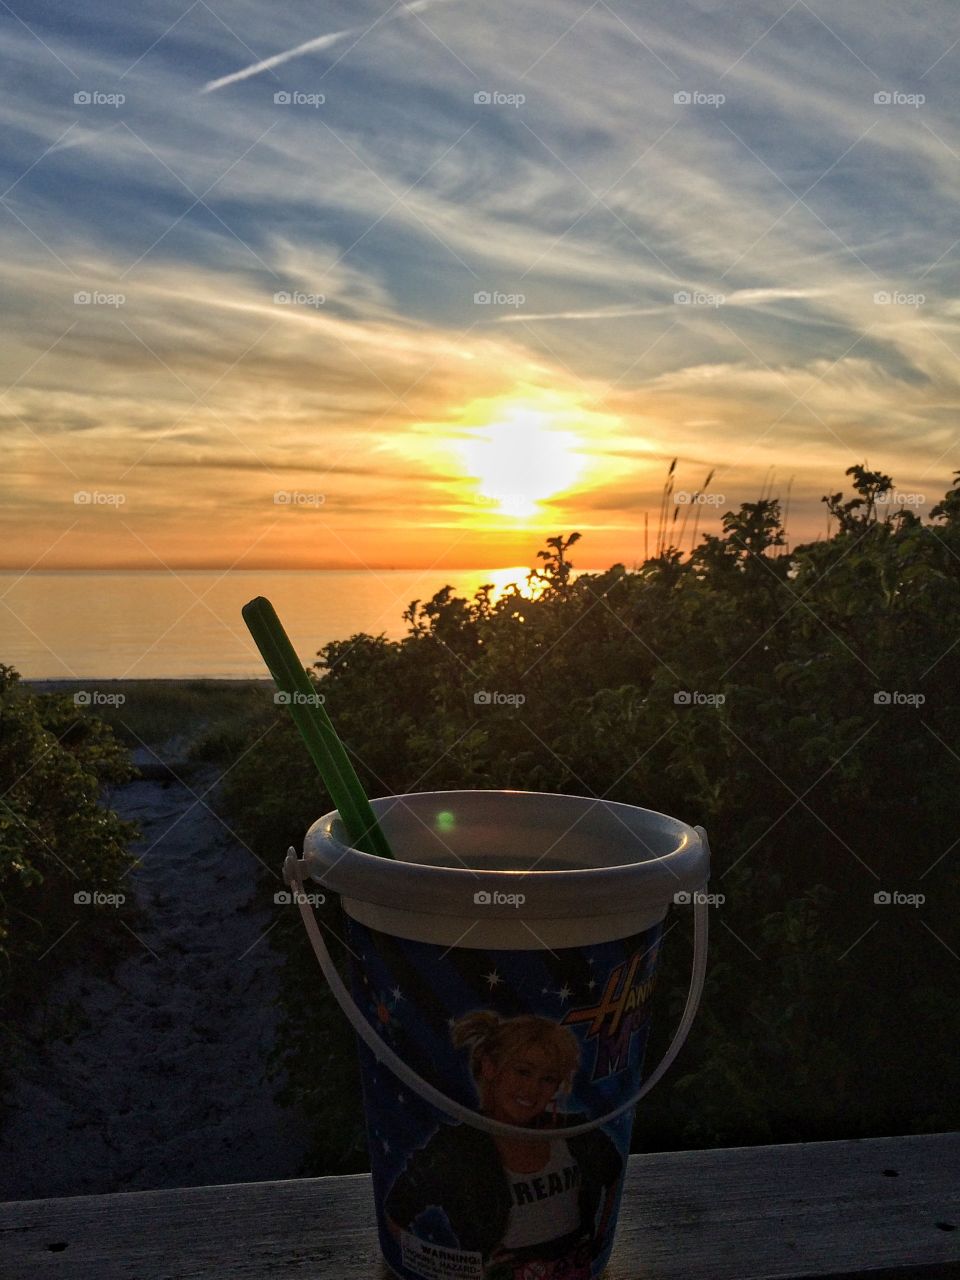 Bucket in sunset